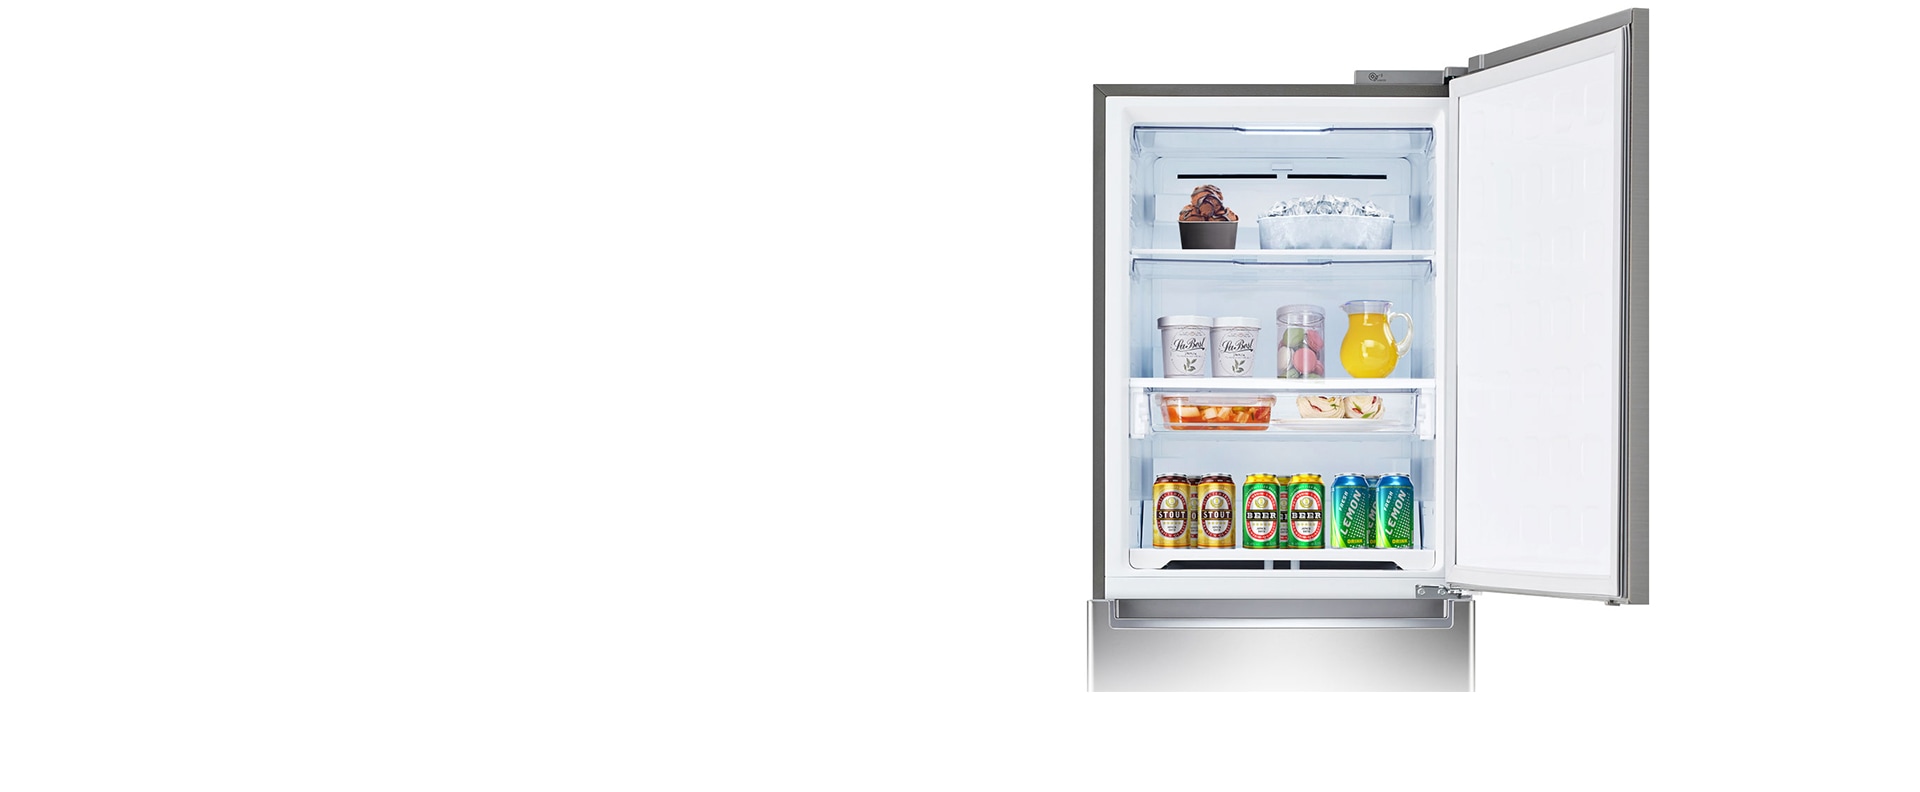 상칸을 냉동 또는 냉장으로1